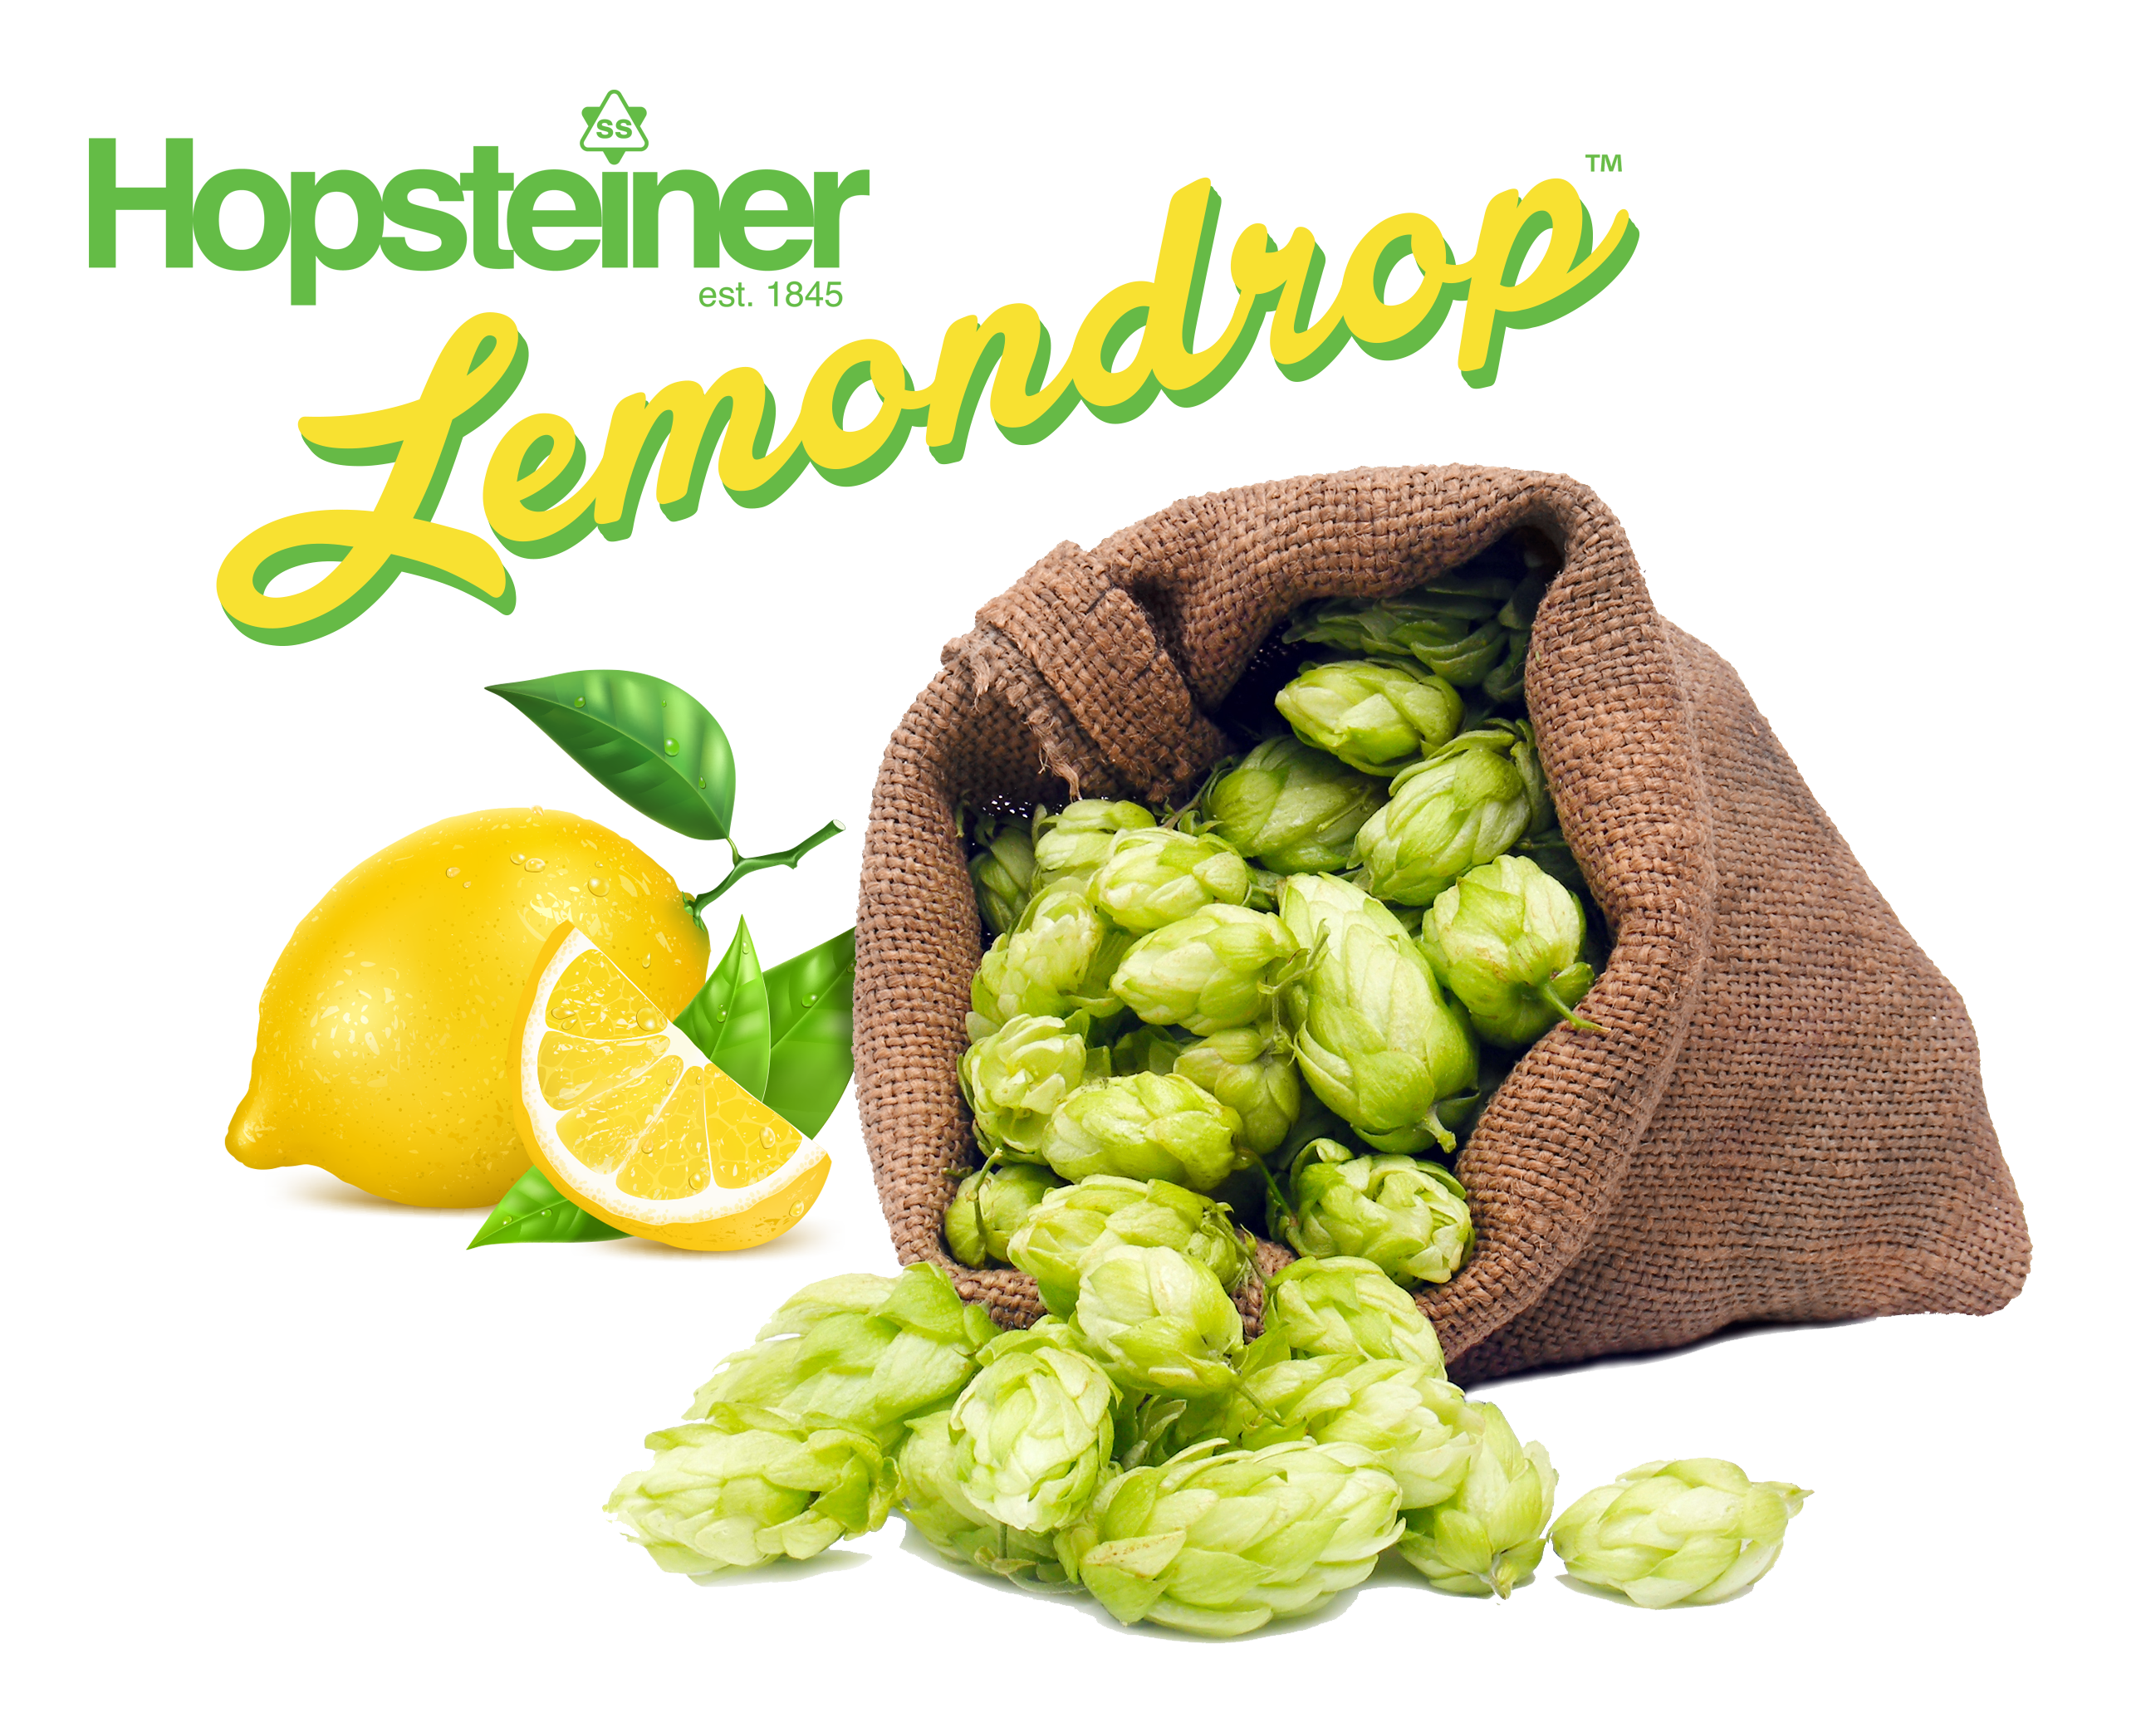 Lemondrop™ Hopsteiner #01210 US Hops